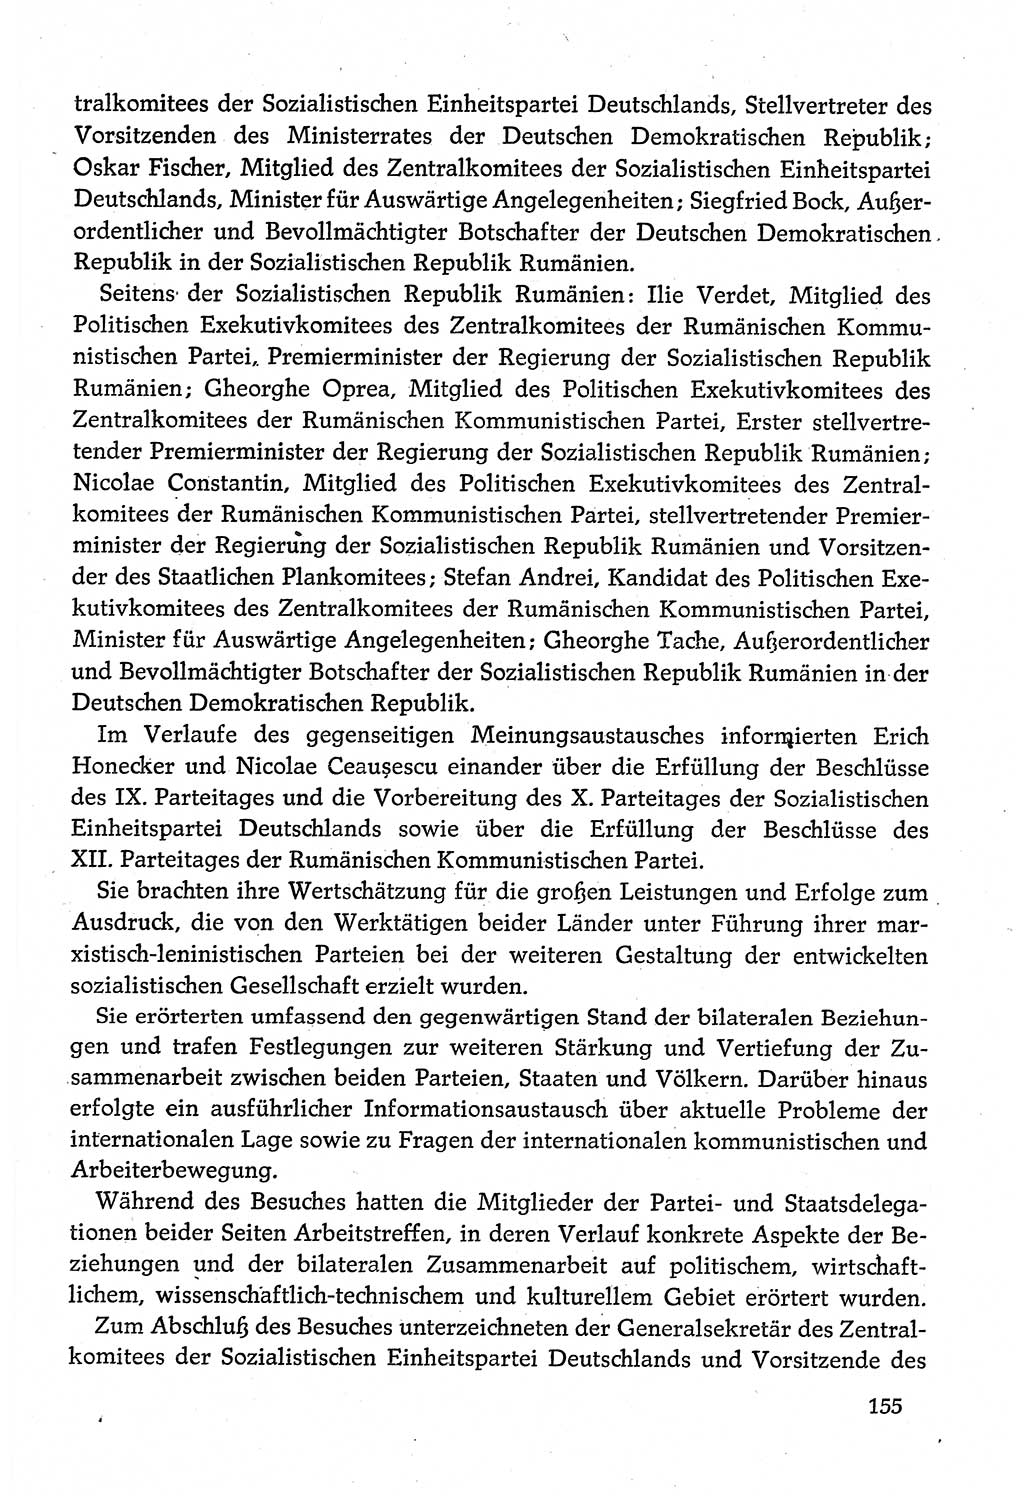 Dokumente der Sozialistischen Einheitspartei Deutschlands (SED) [Deutsche Demokratische Republik (DDR)] 1980-1981, Seite 155 (Dok. SED DDR 1980-1981, S. 155)